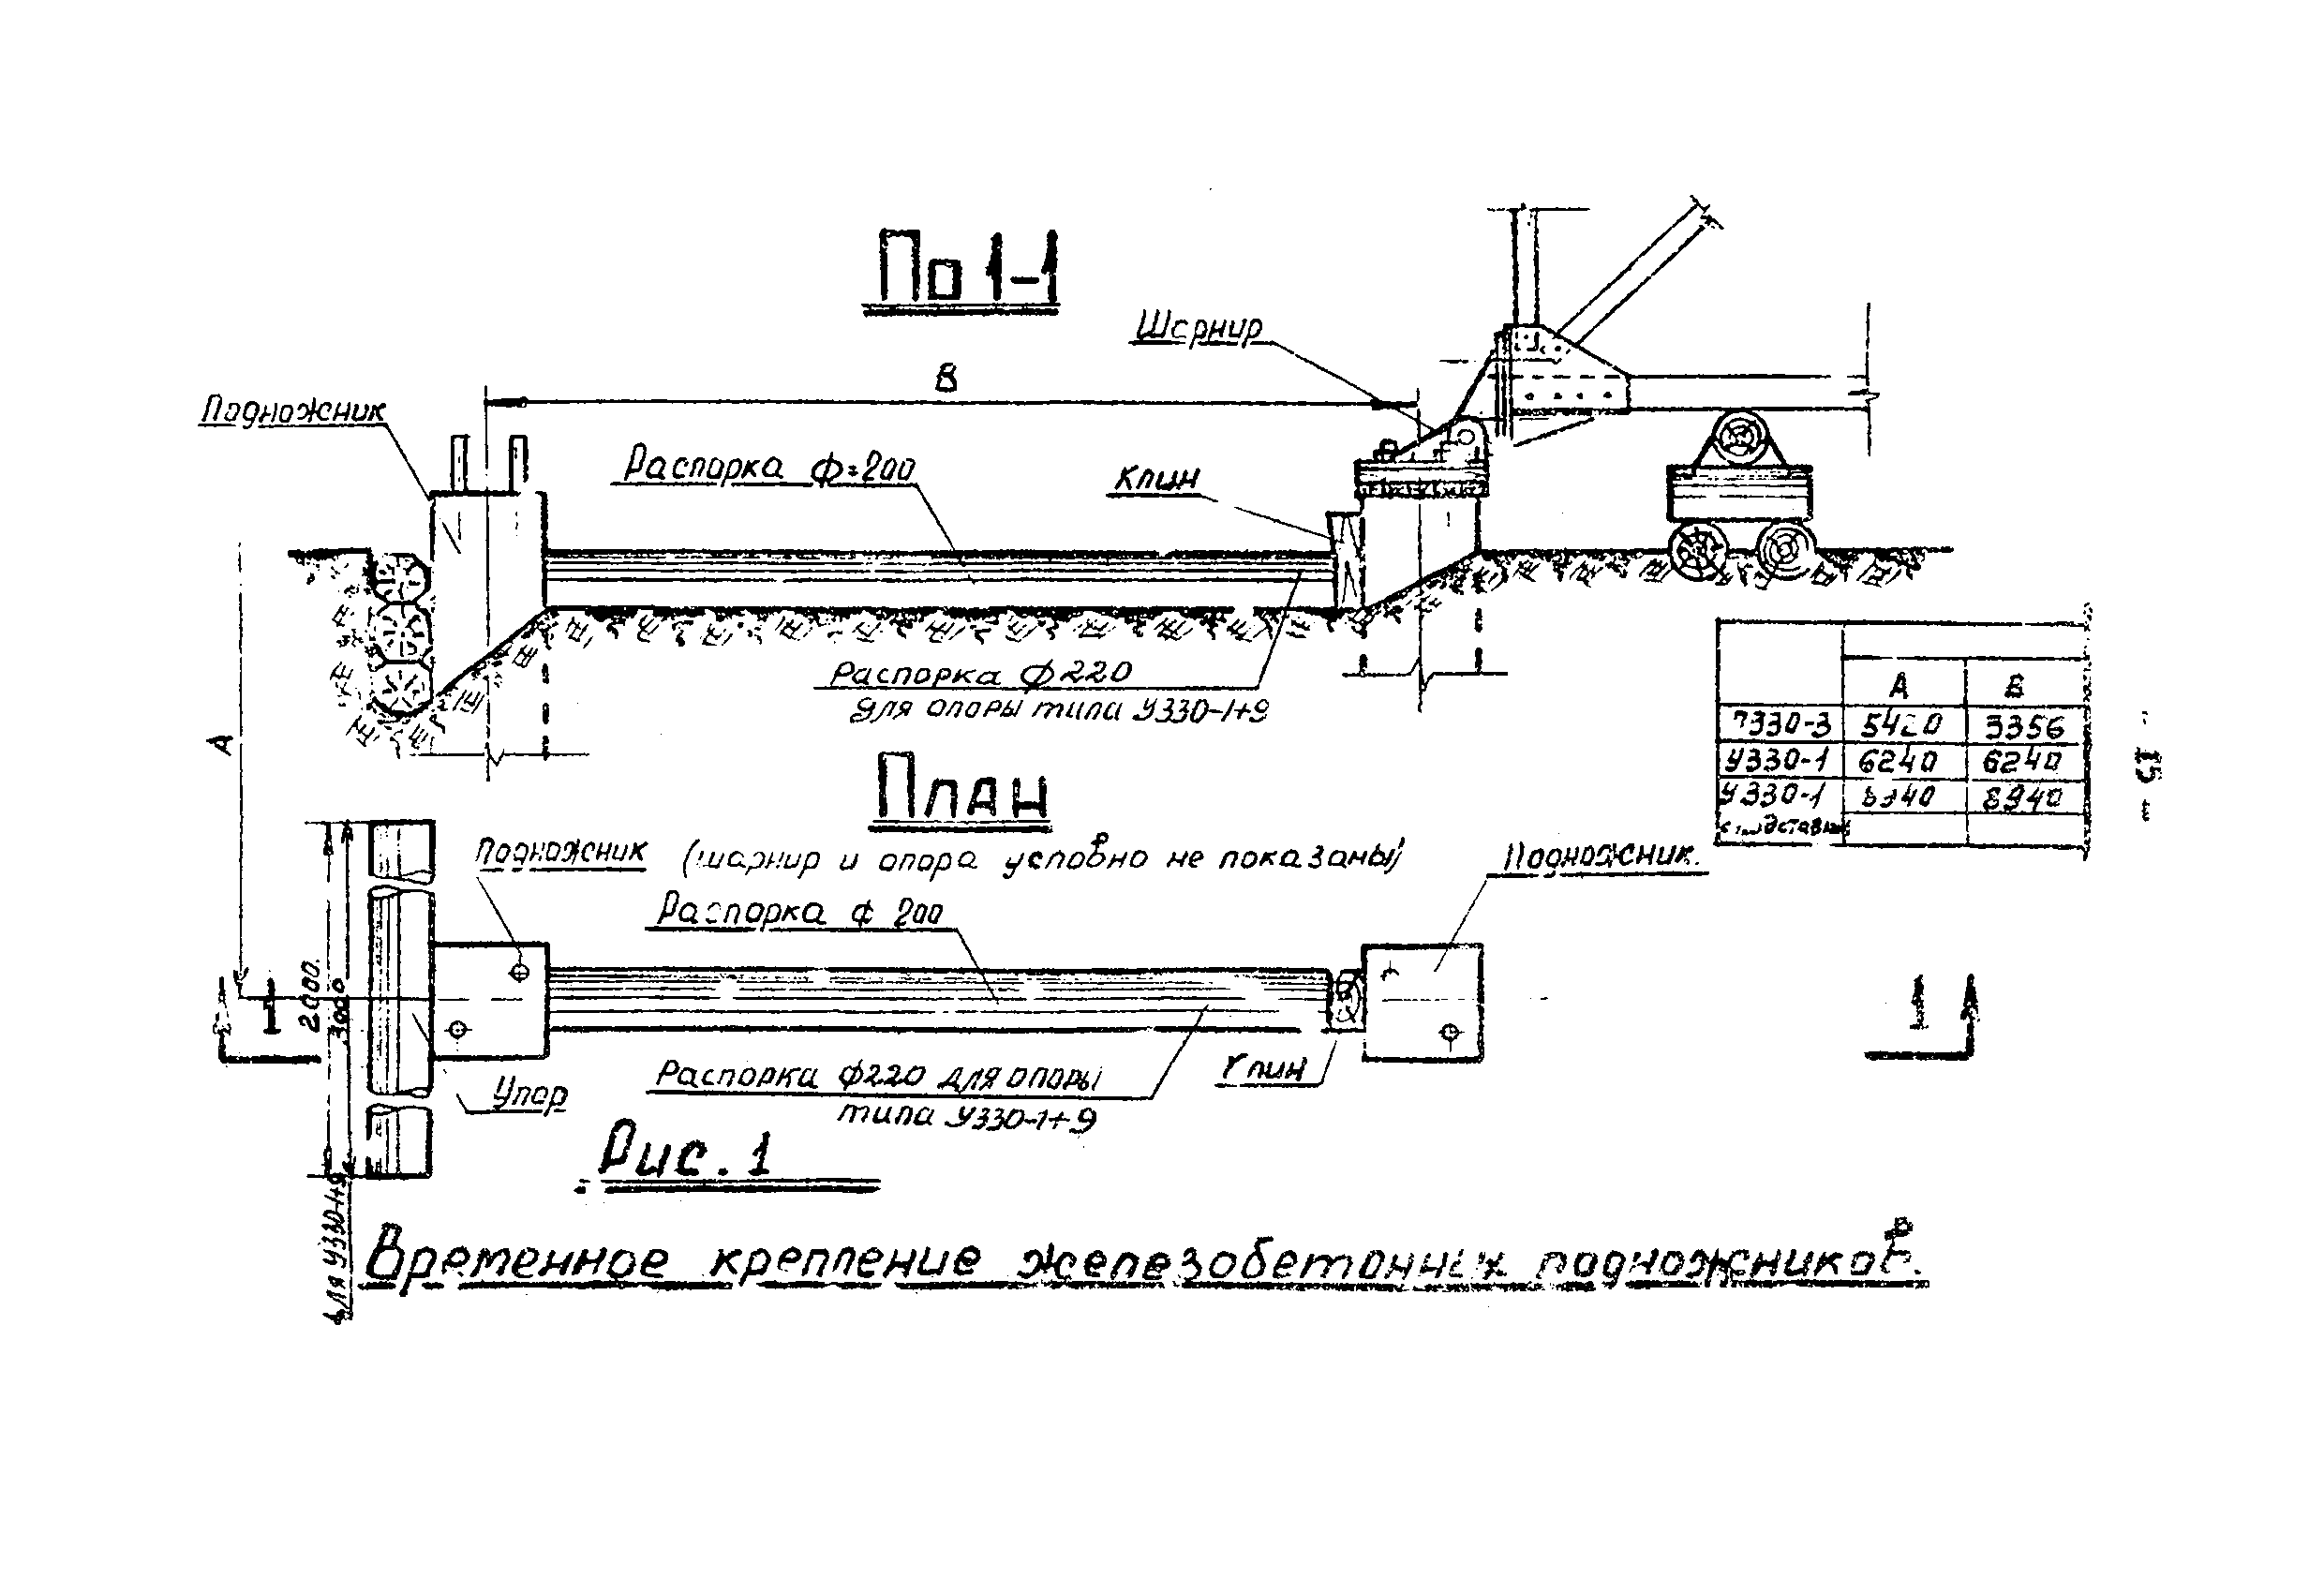 ТТК К-III-27-5